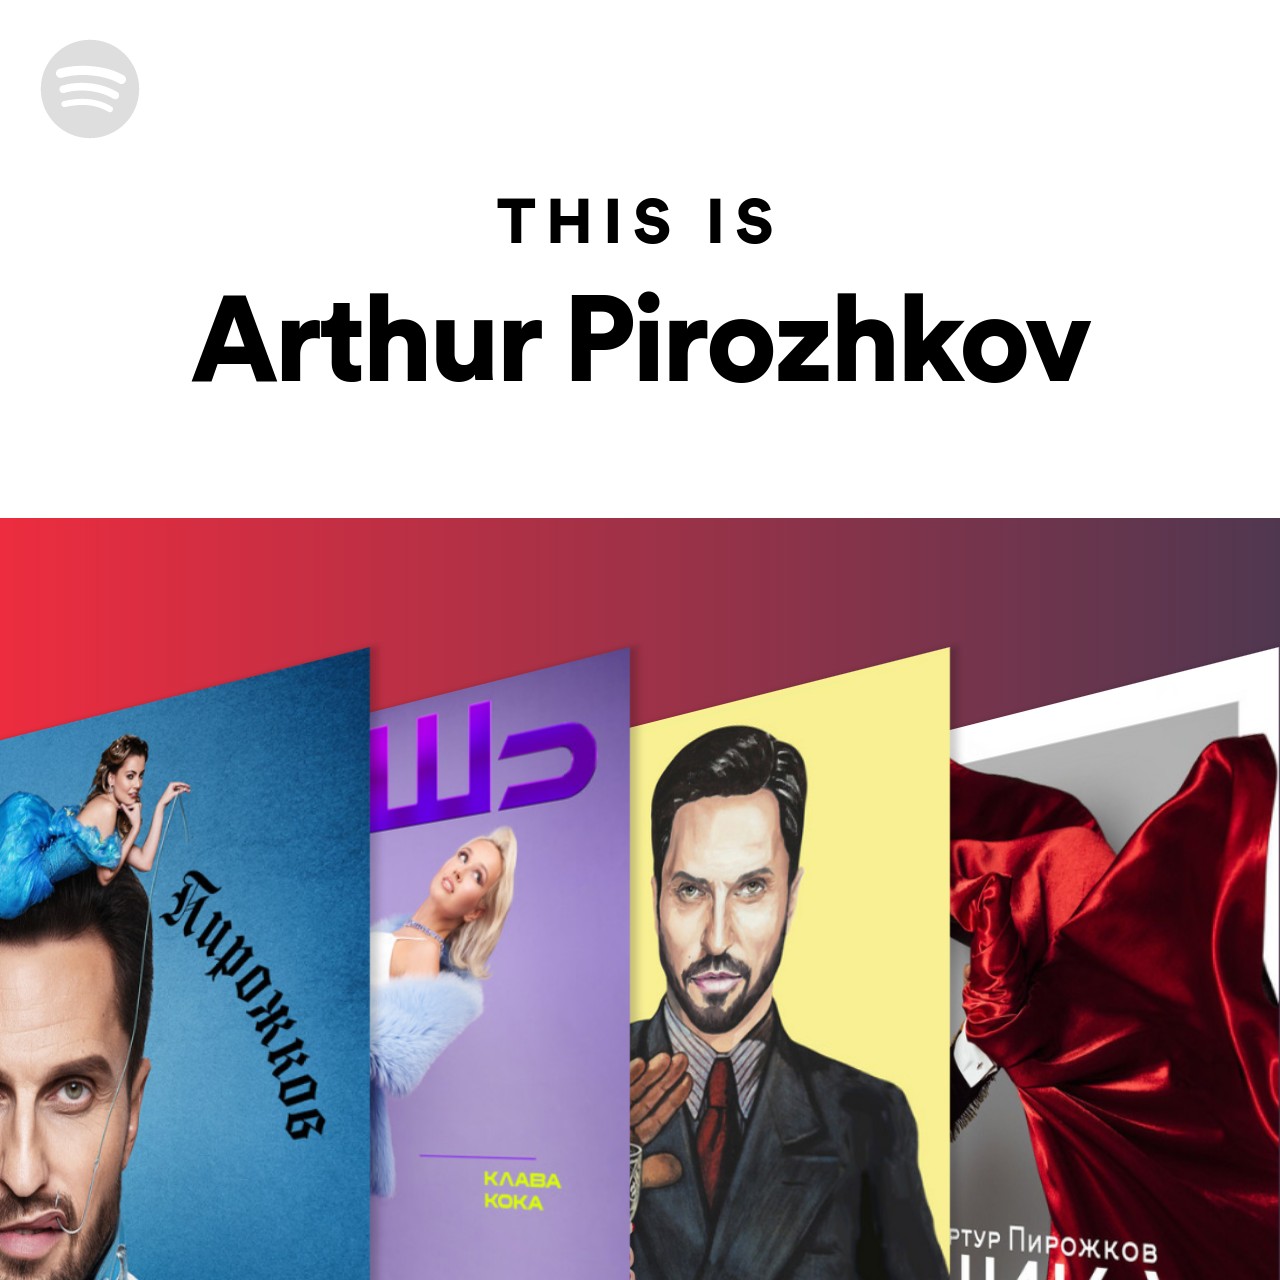 This Is Arthur Pirozhkov